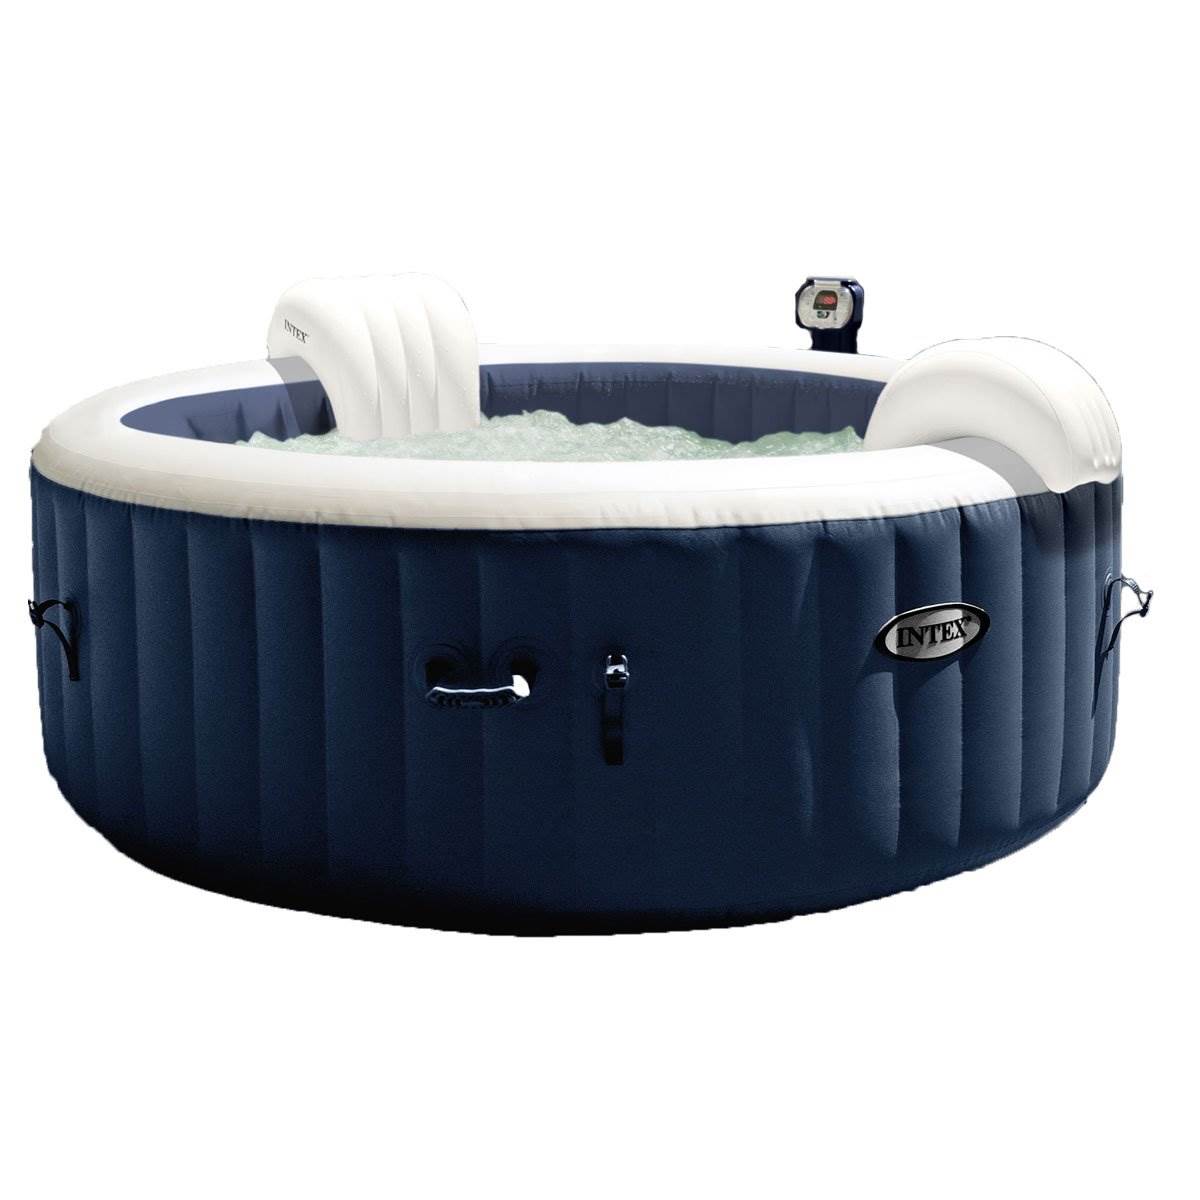 Intex PureSpa 4 Inflatable Hot Tub + Intex Hot Tub Maintenance Kit - image 7 of 12